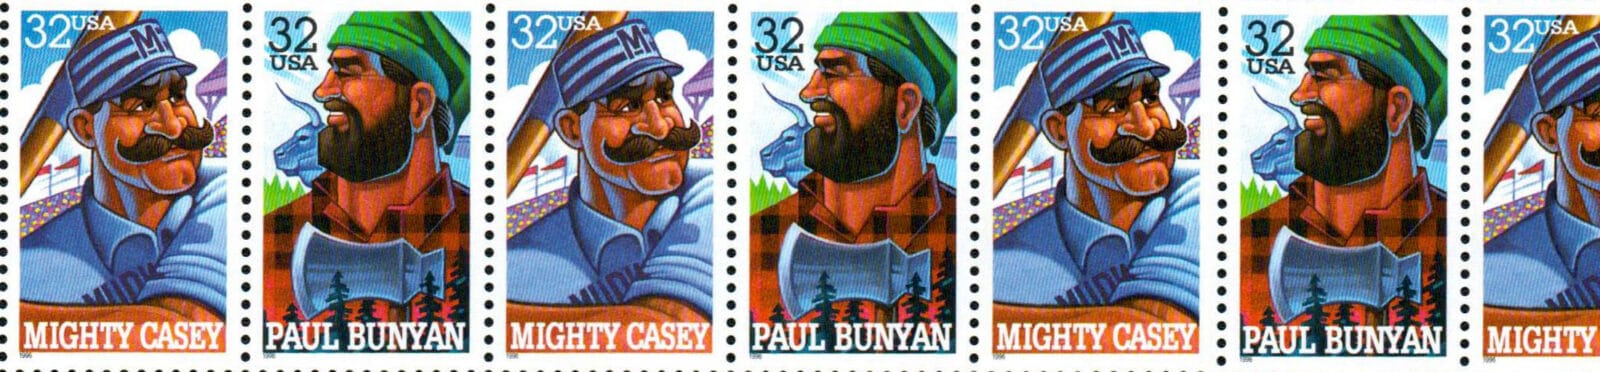 Folk Heroes, U.S. Postage Stamps header